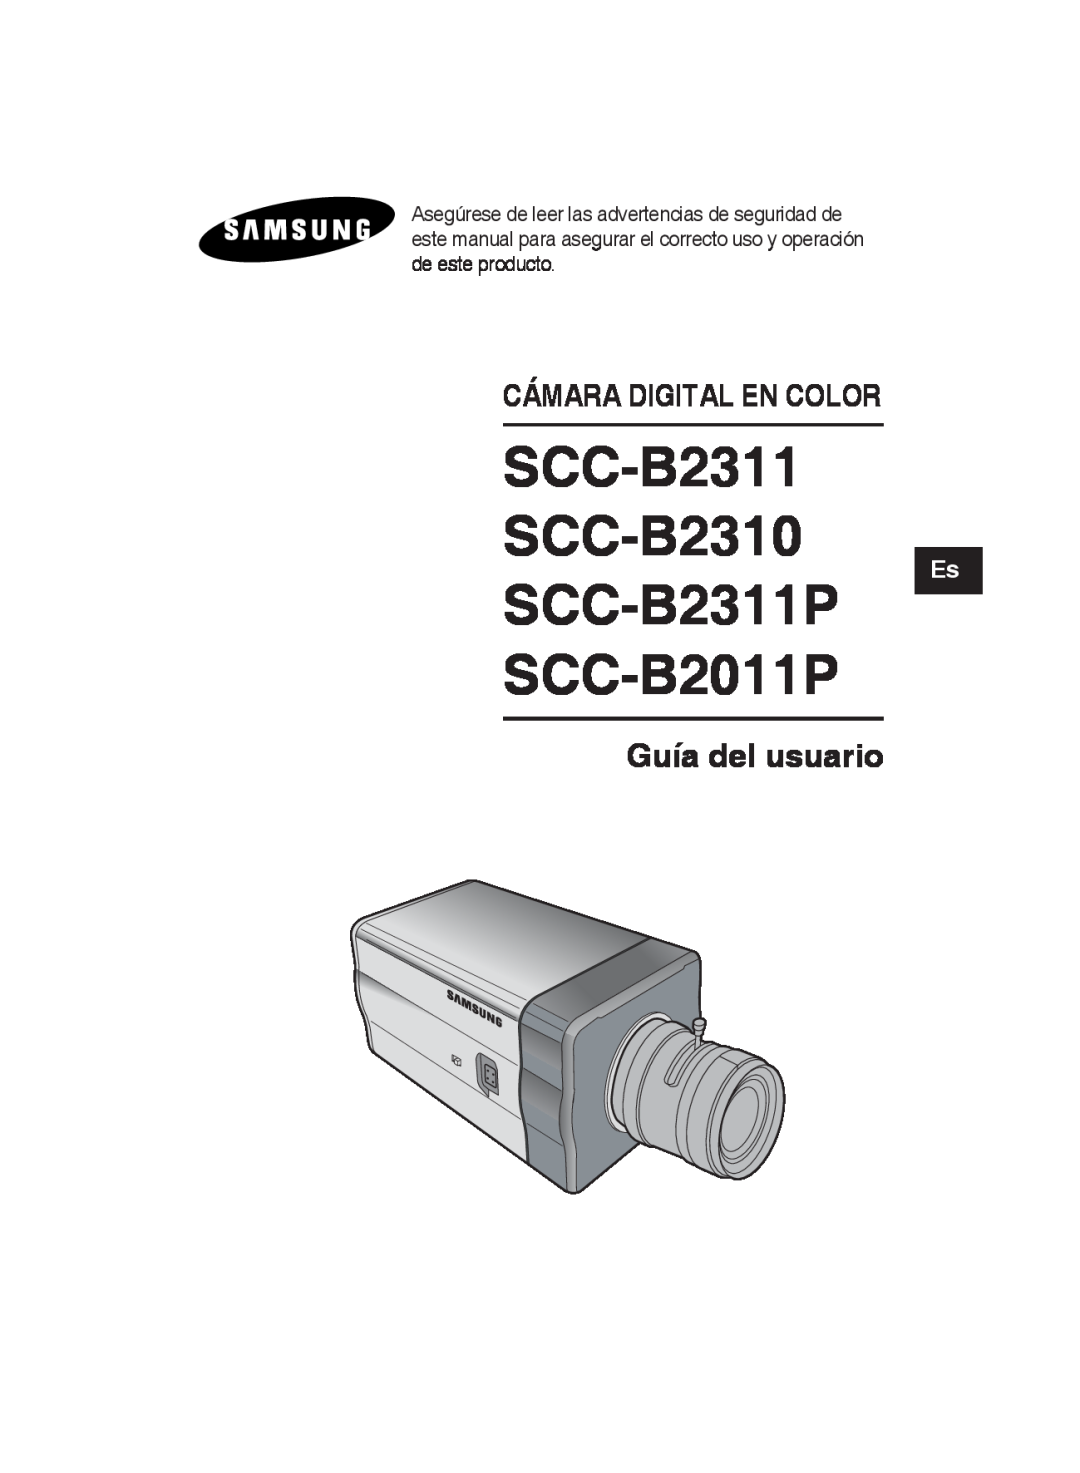 Samsung SCC-B2011P/TRK, SCC-B2311N SCC-B2311 SCC-B2310, SCC-B2311P SCC-B2011P, Guía del usuario, Cámara Digital En Color 